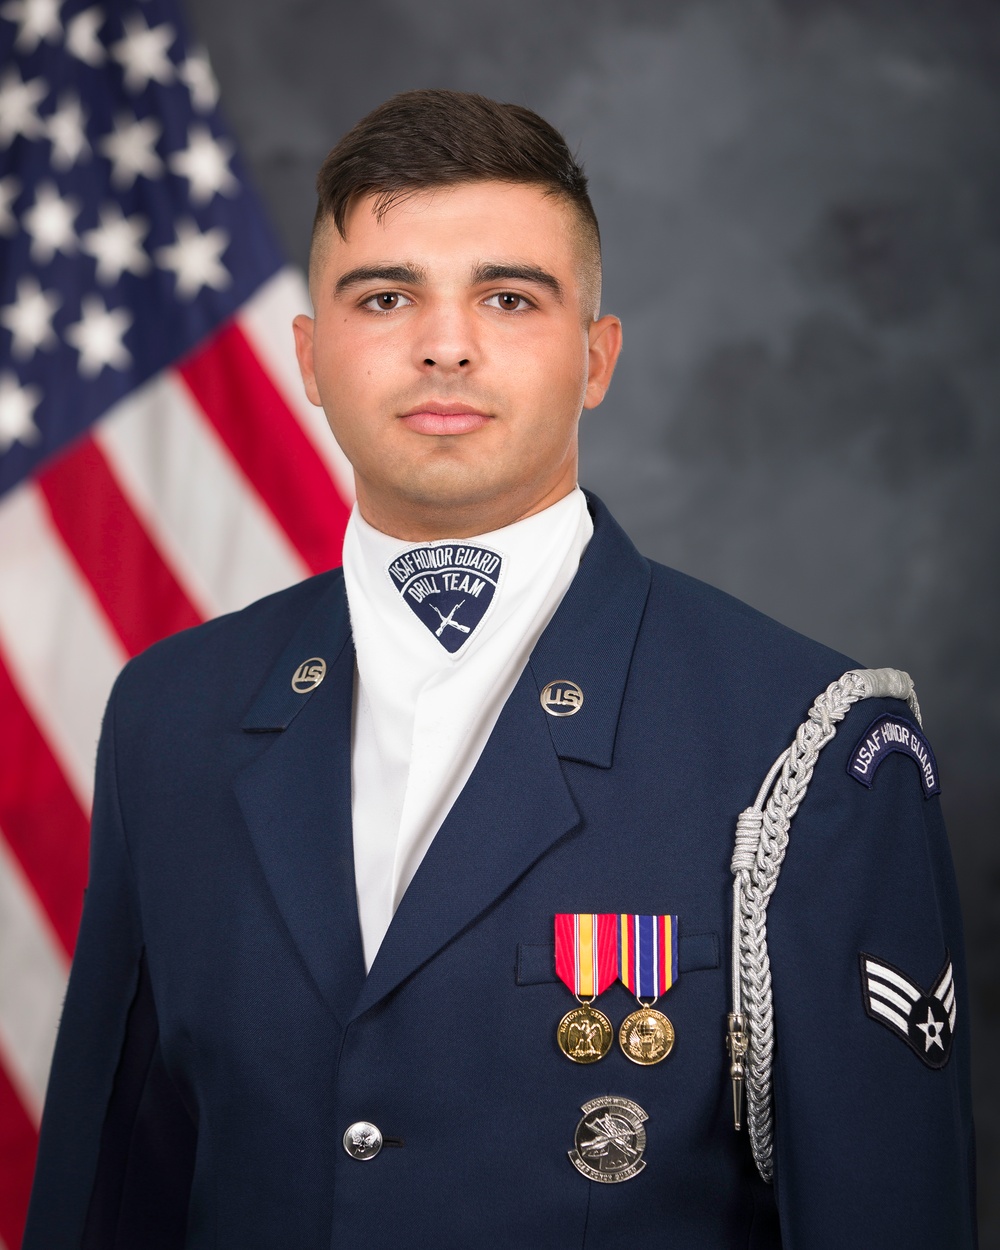 DVIDS - Images - Official portrait, US Air Force Honor Guard Four Man ...